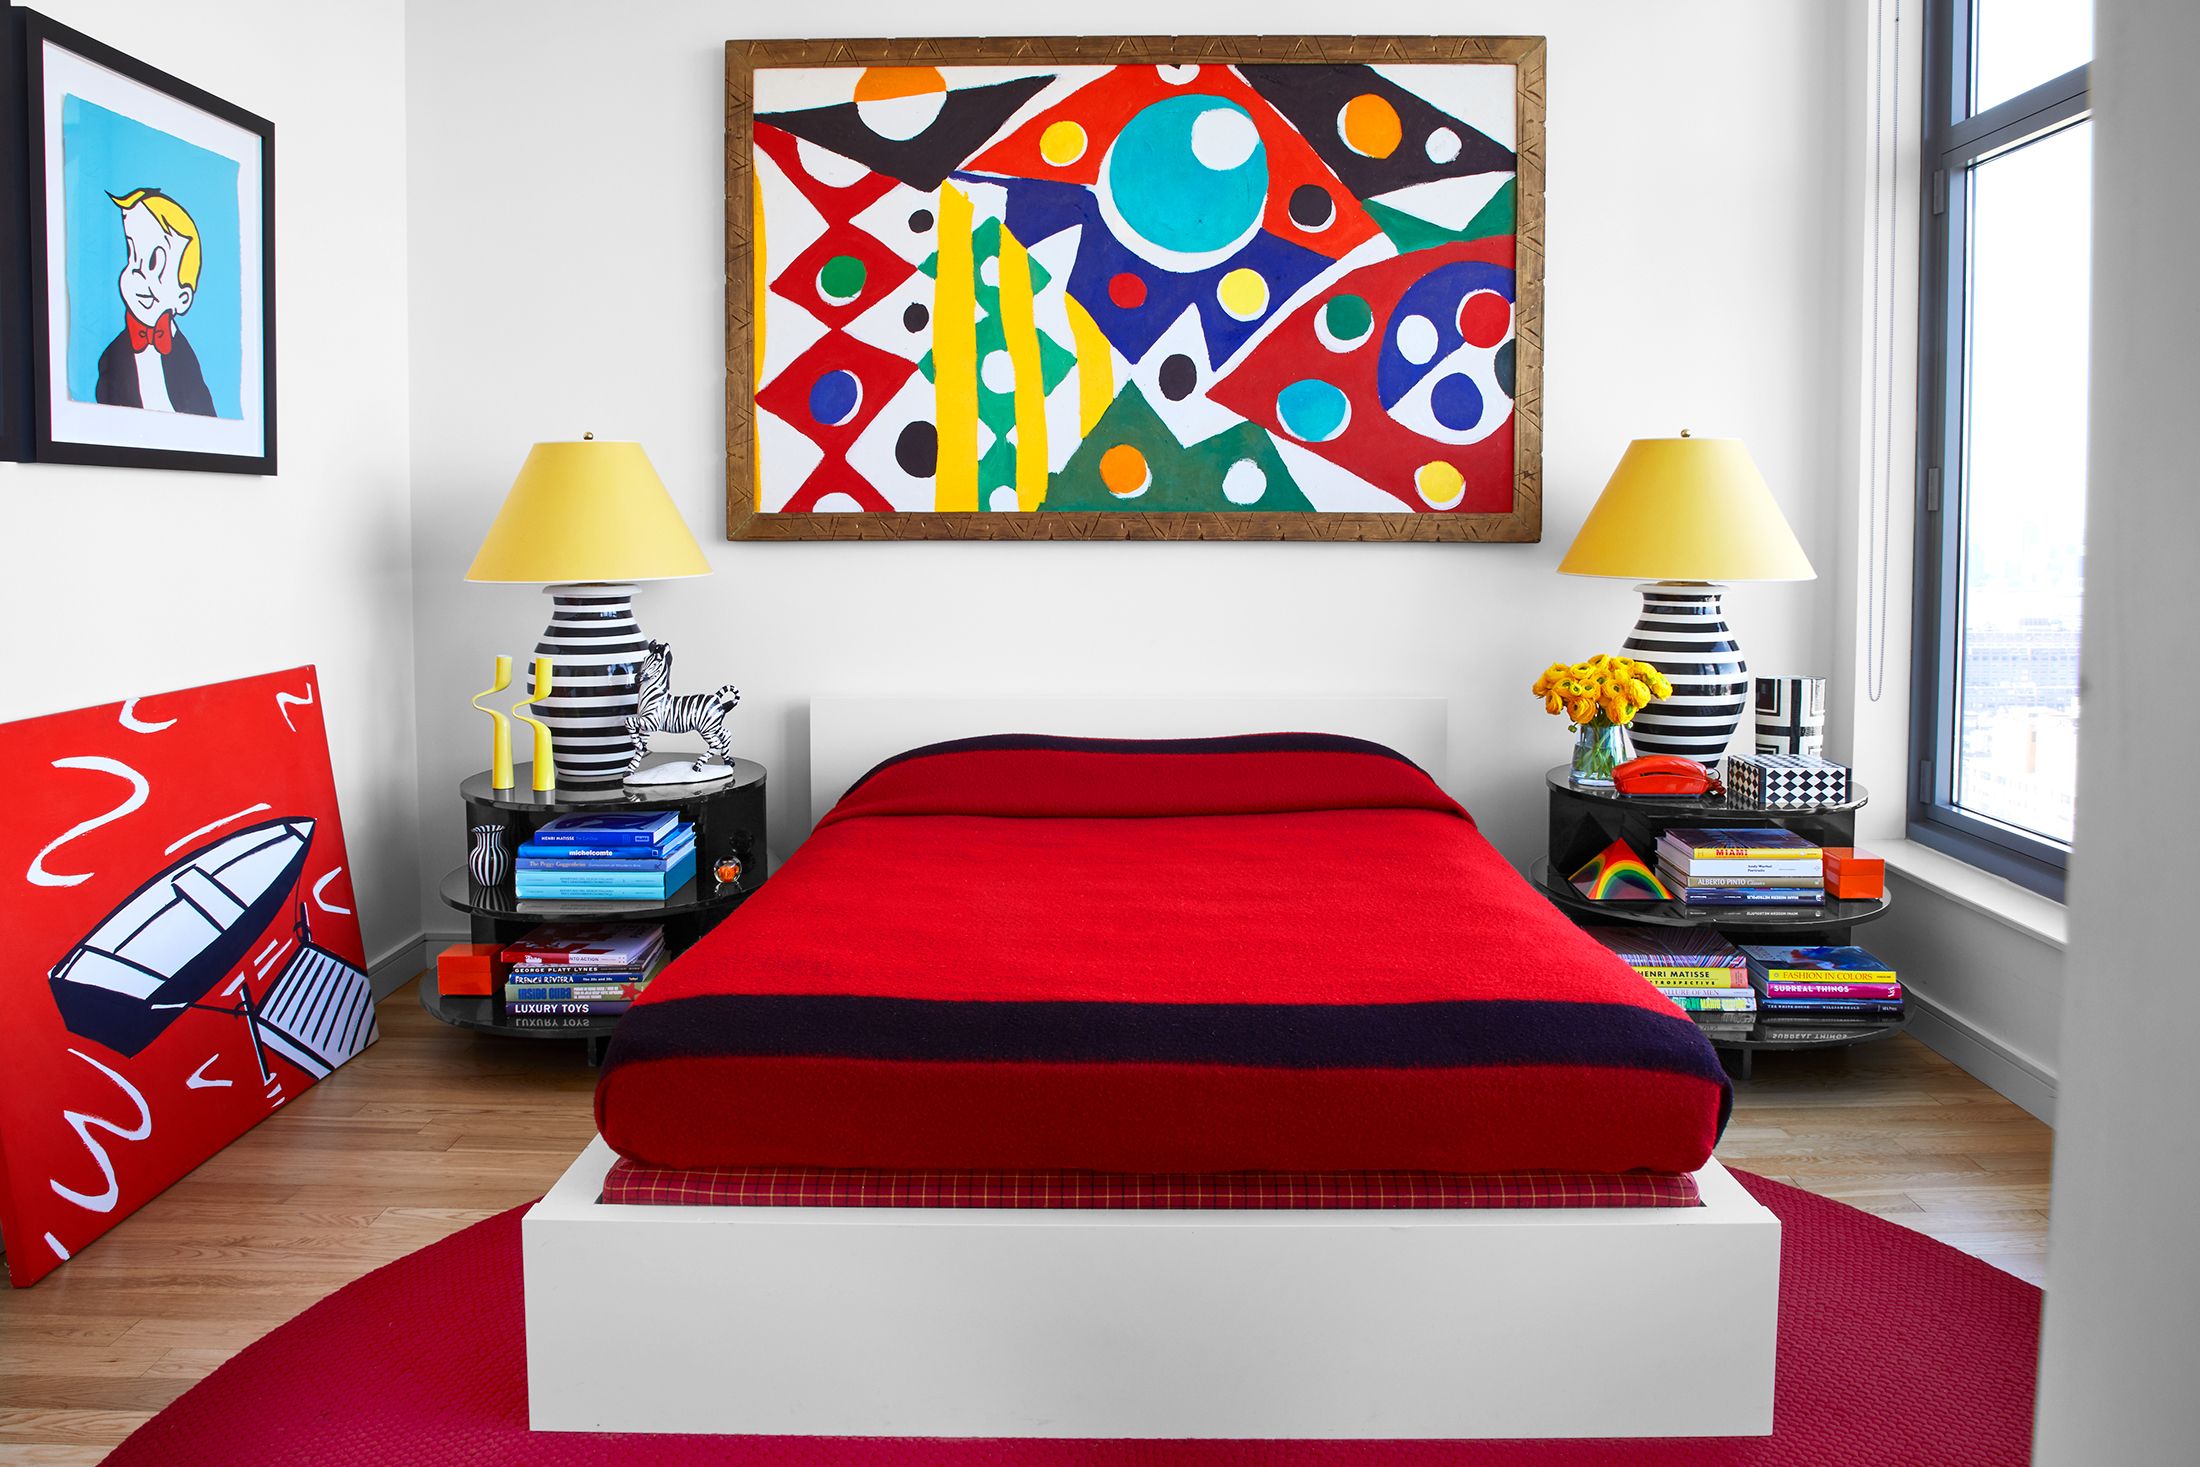 https://hips.hearstapps.com/hmg-prod/images/bedroom-decorating-tips-hbx110118livingcolor03-1623356818.jpg